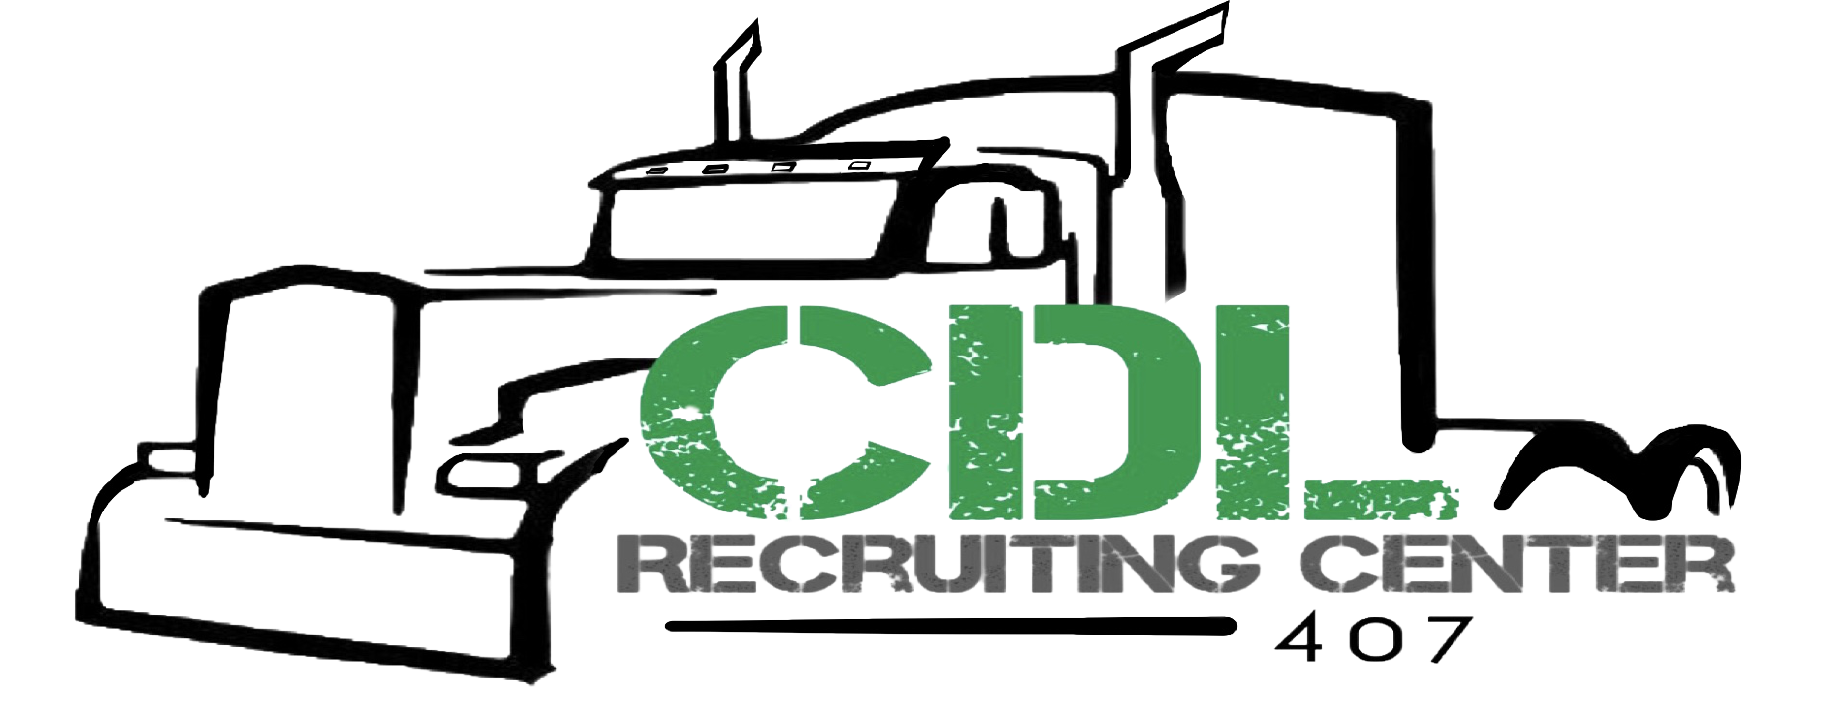 CDL Recruiting Center Logo